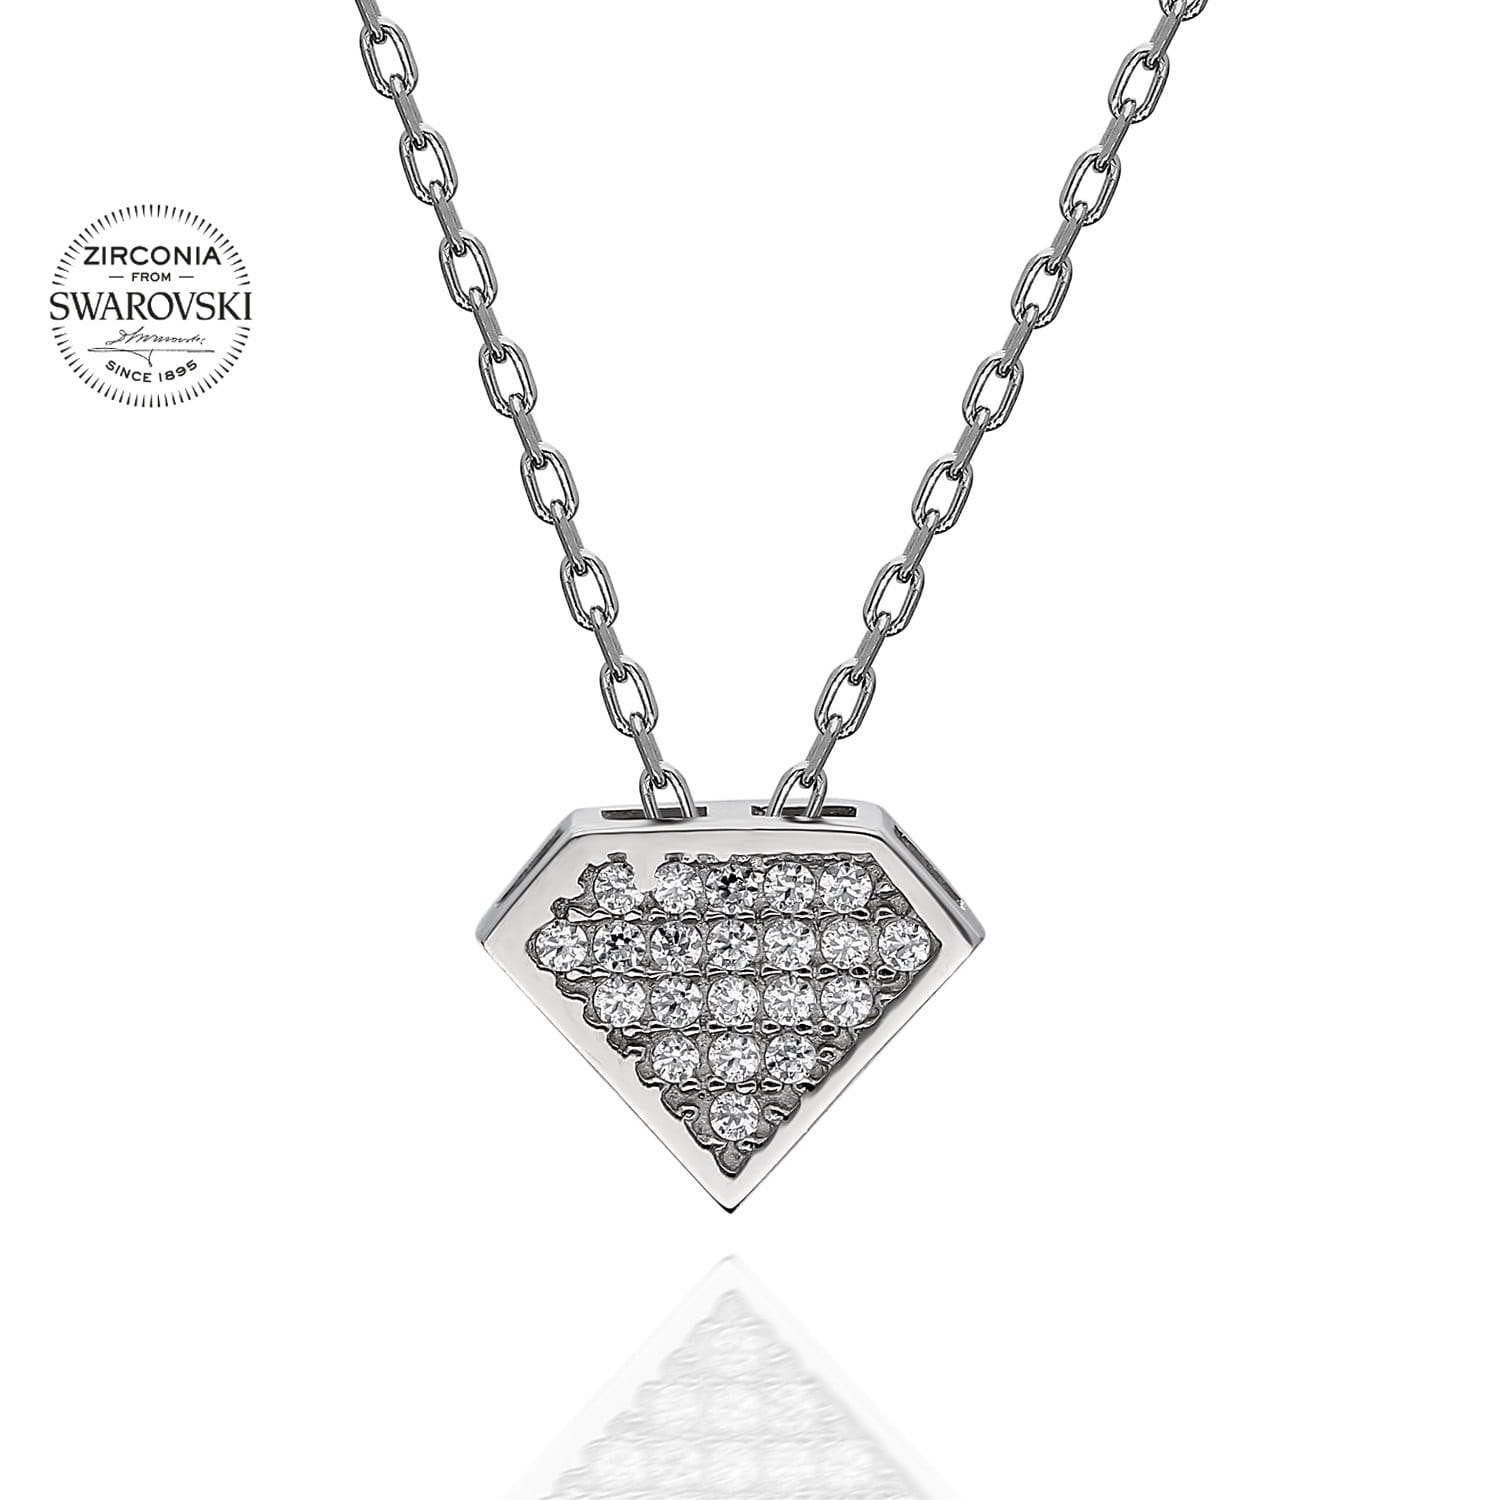 Lant din Argint 925 cu pandantiv in forma de triunghi stilizat cu cristale swarovski